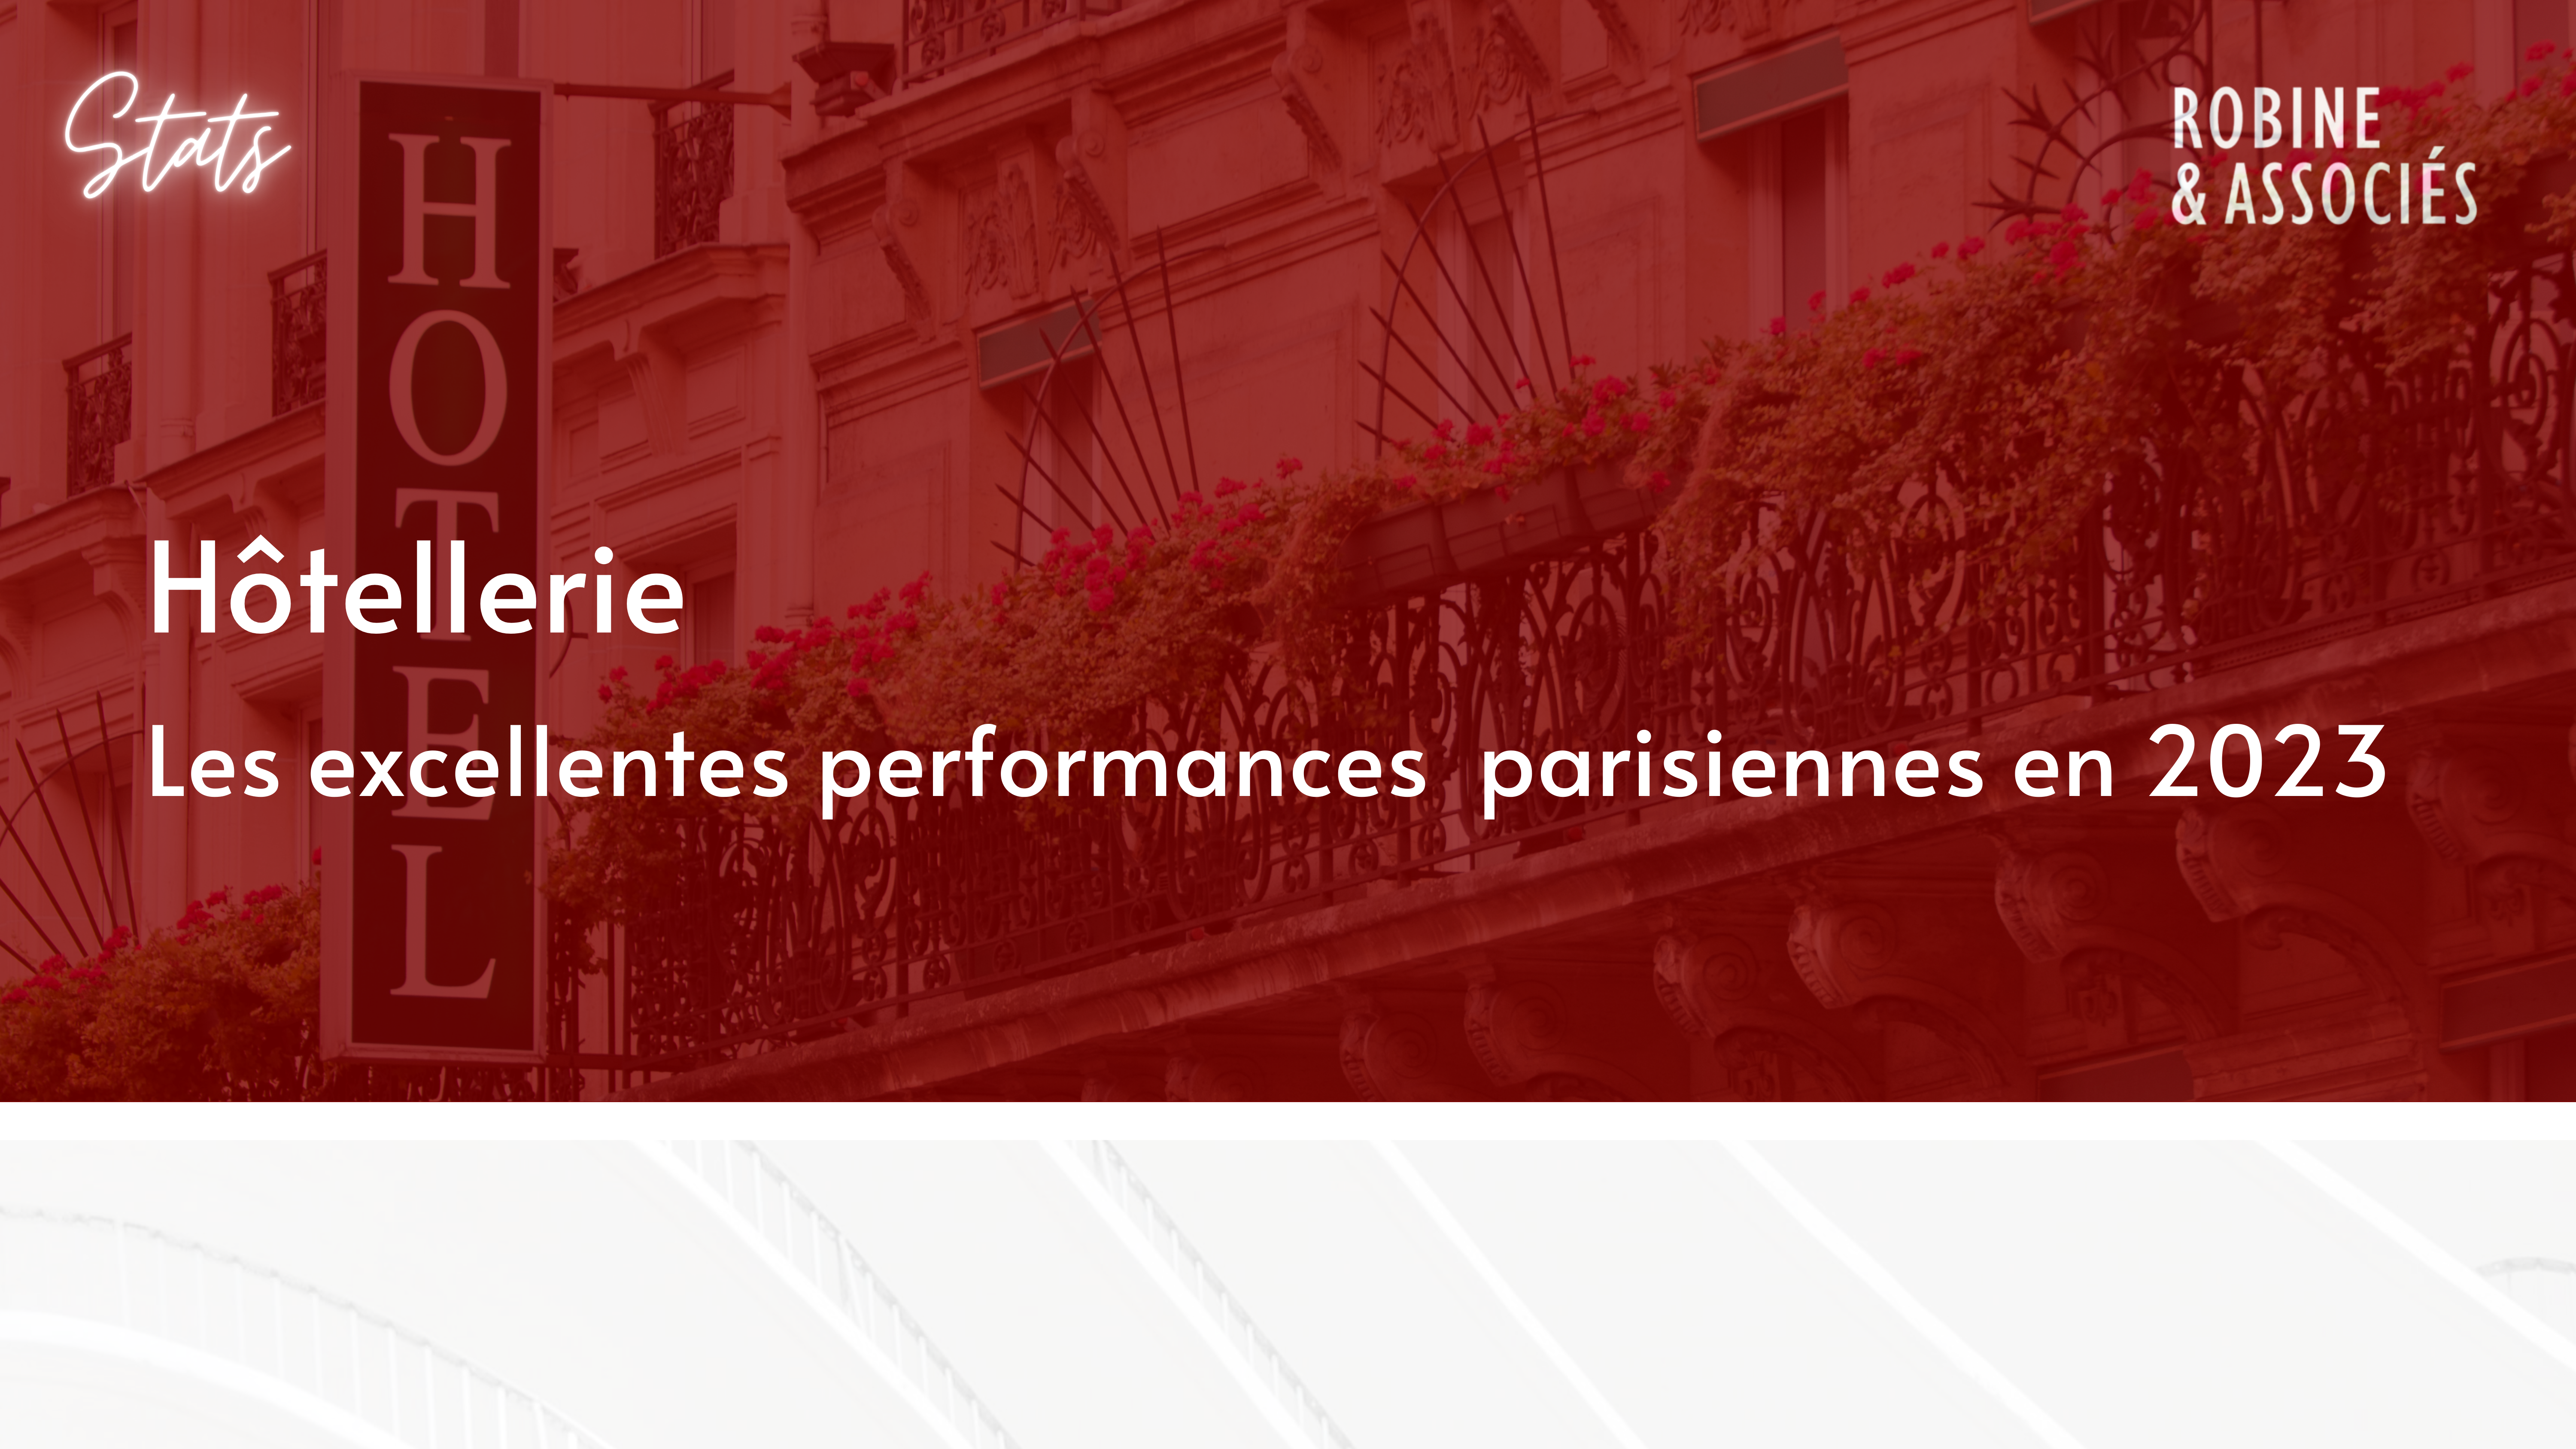 Les excellentes performances hôtelières parisiennes en 2023